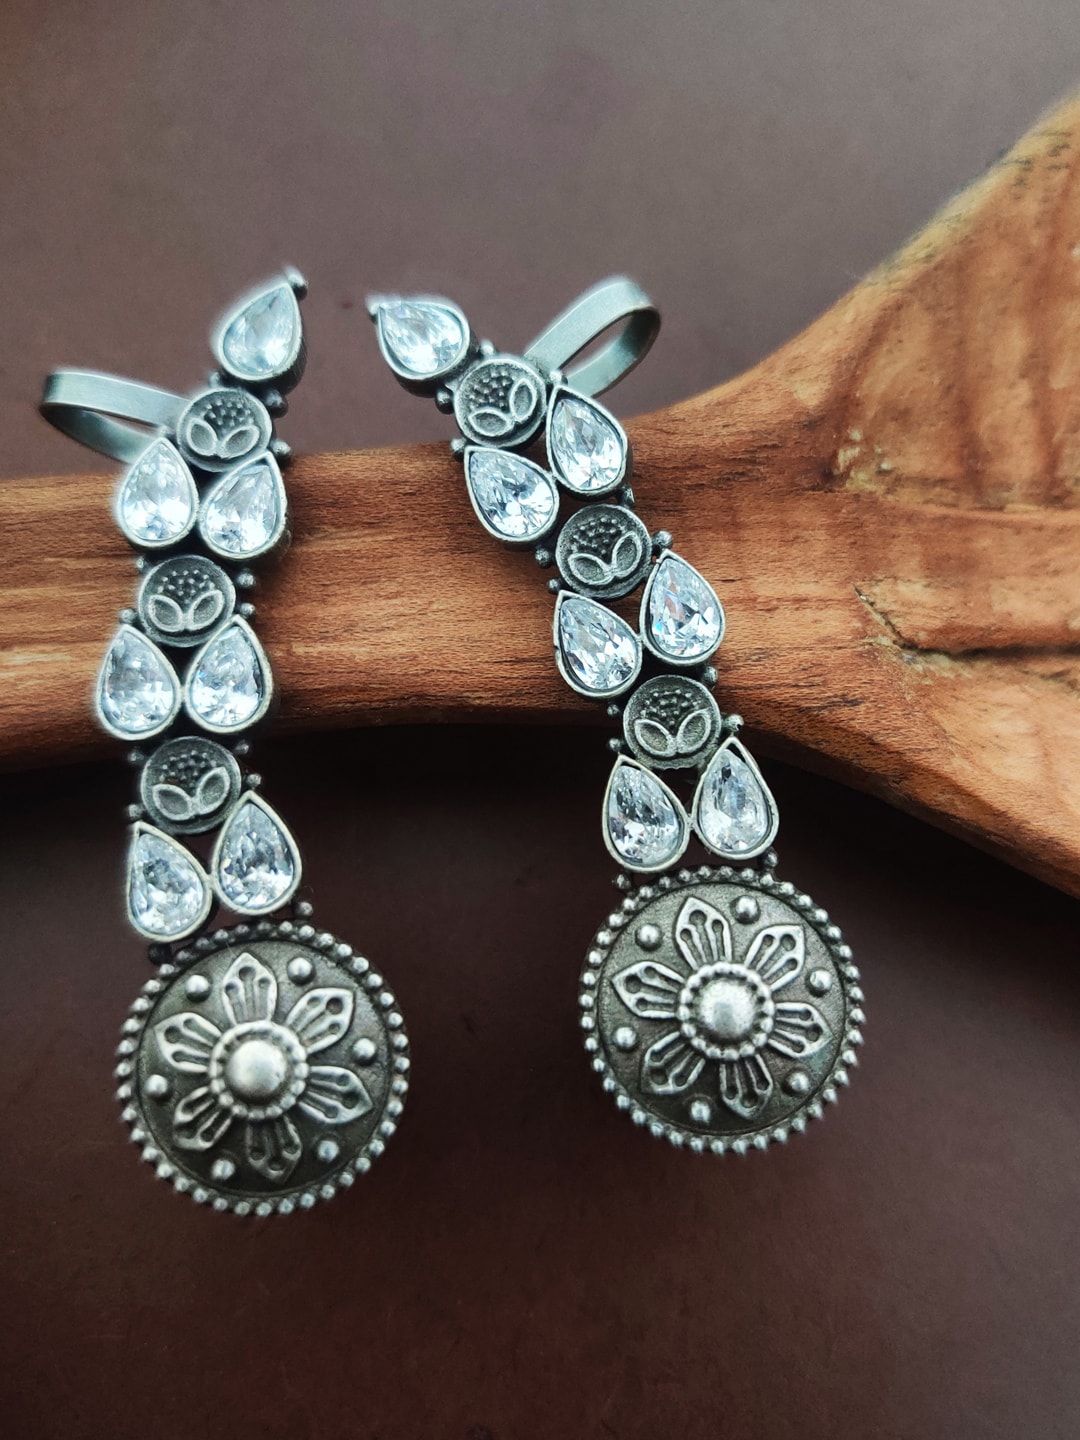 Binnis Wardrobe Silver-Toned Leaf Shaped Ear Cuff Earrings Price in India